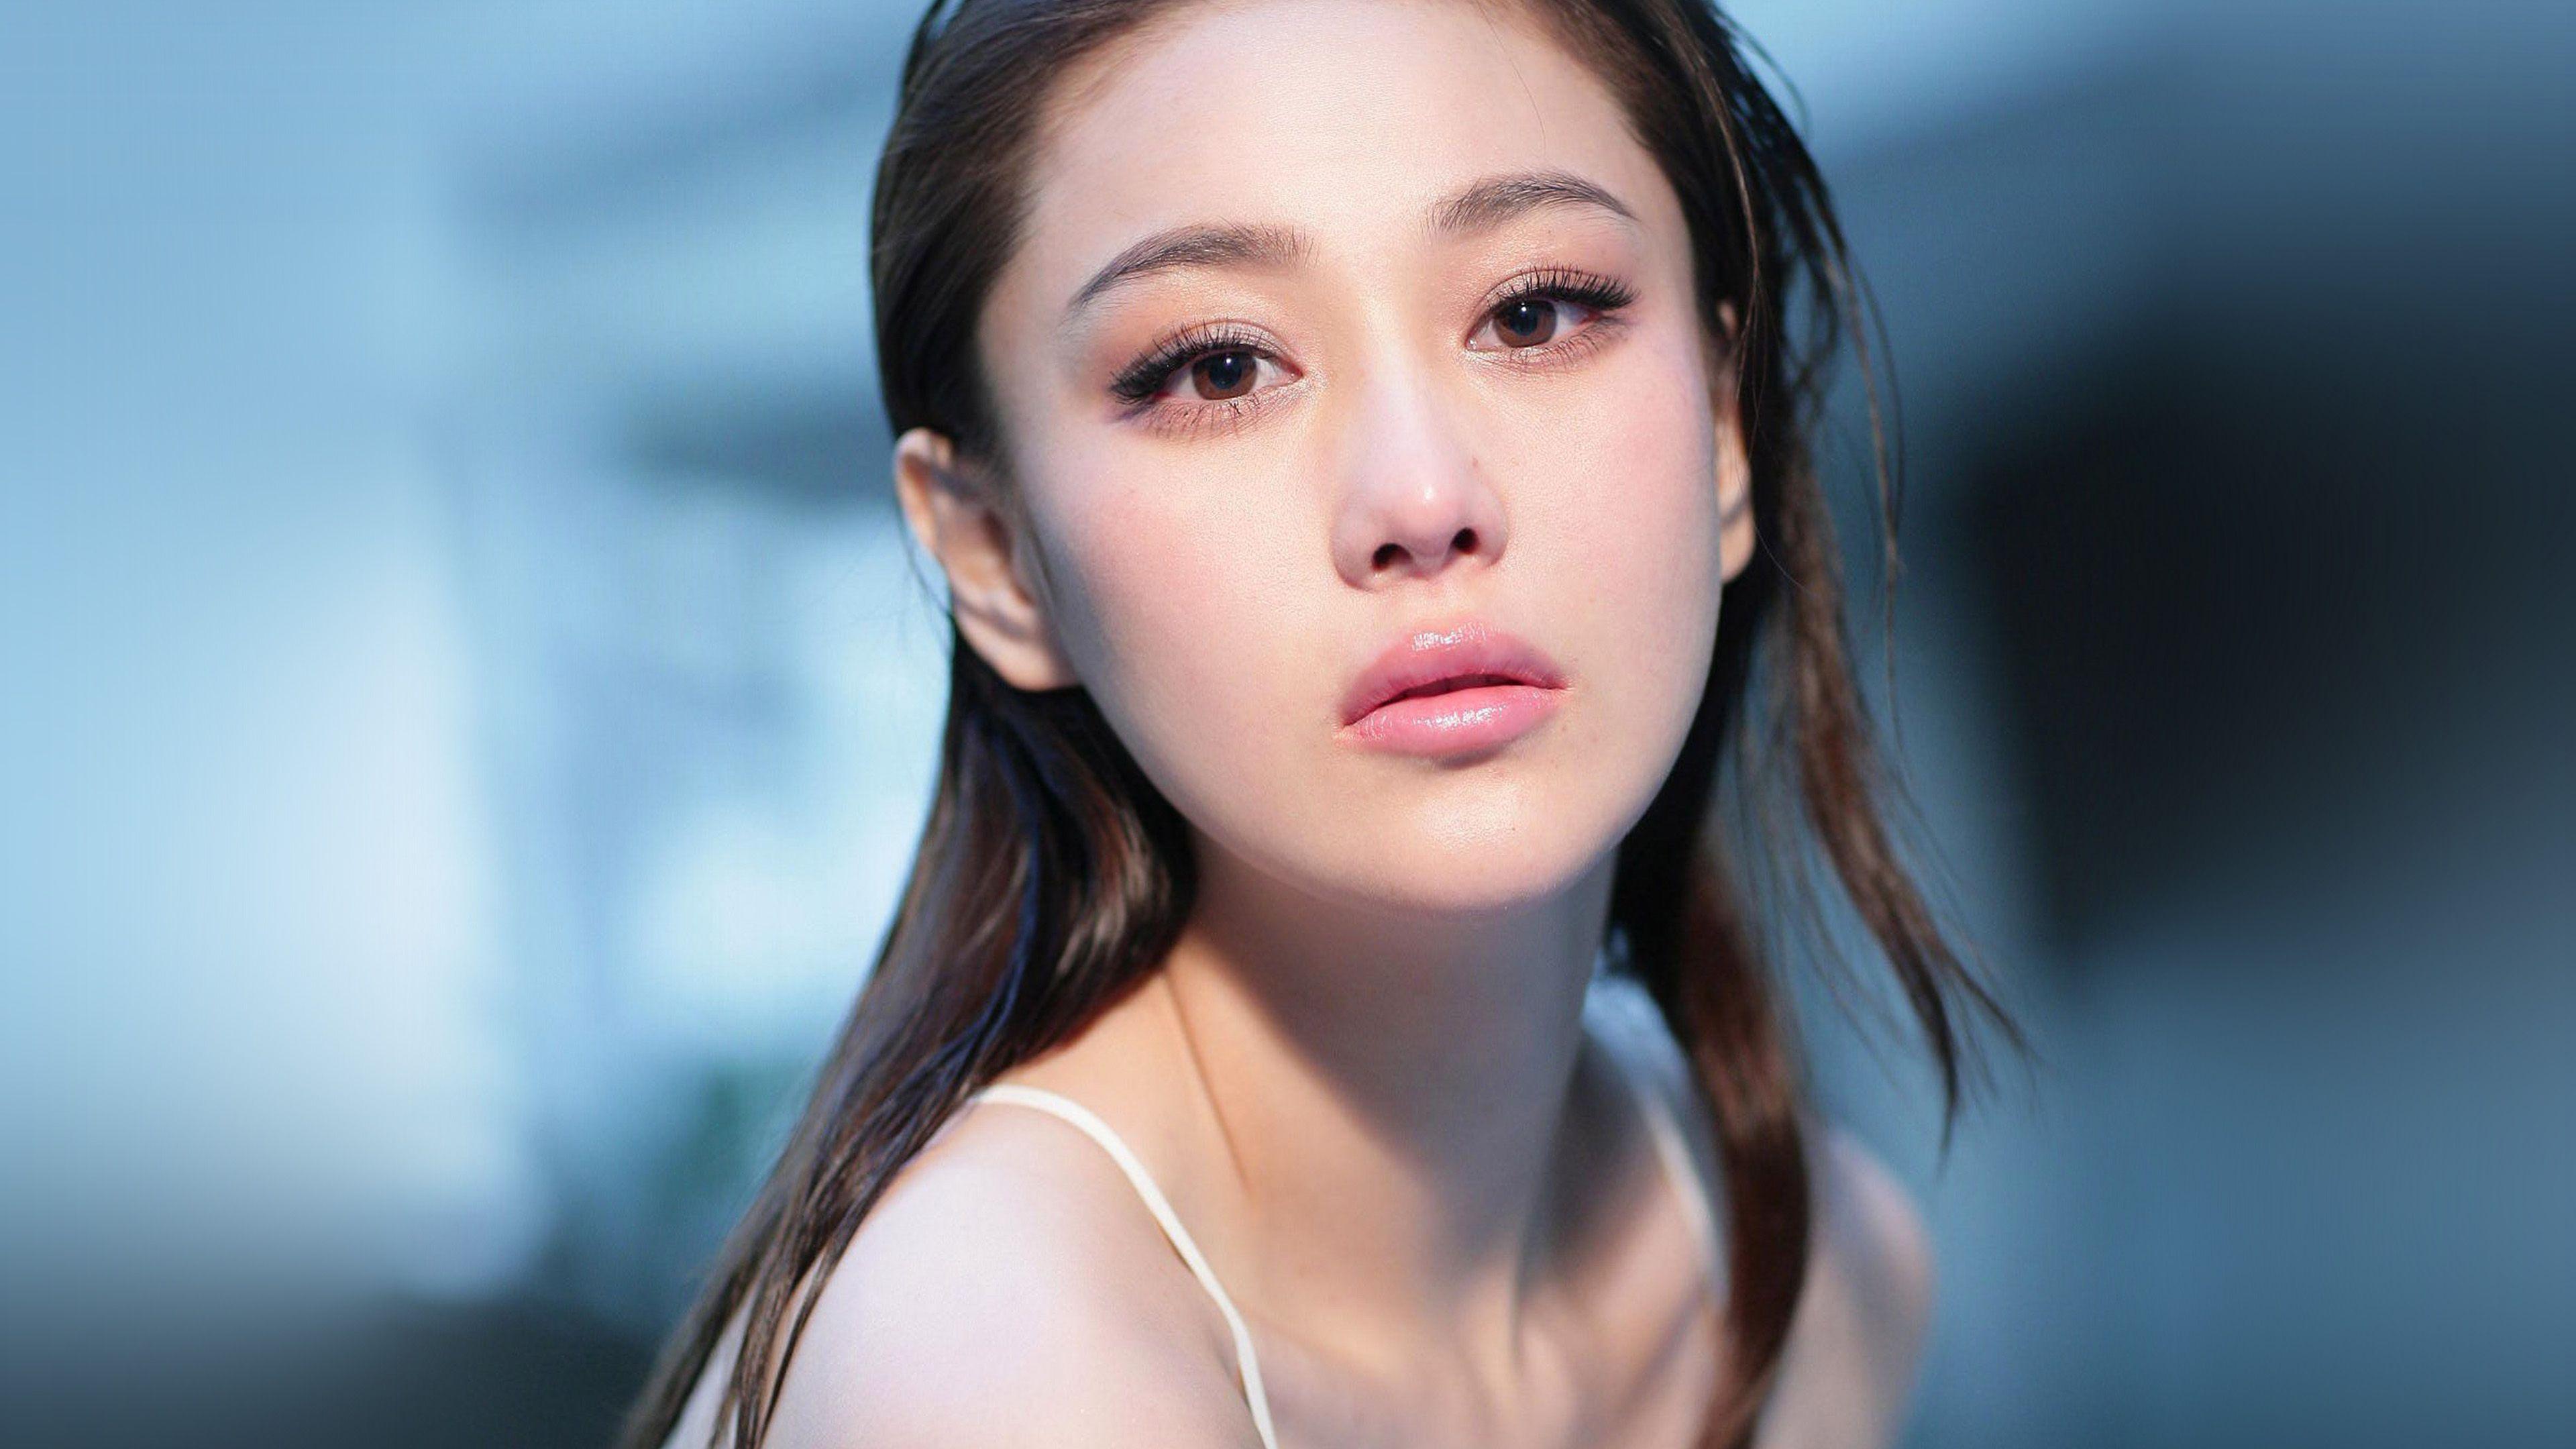 Chinese Girl Model Star Wallpaper